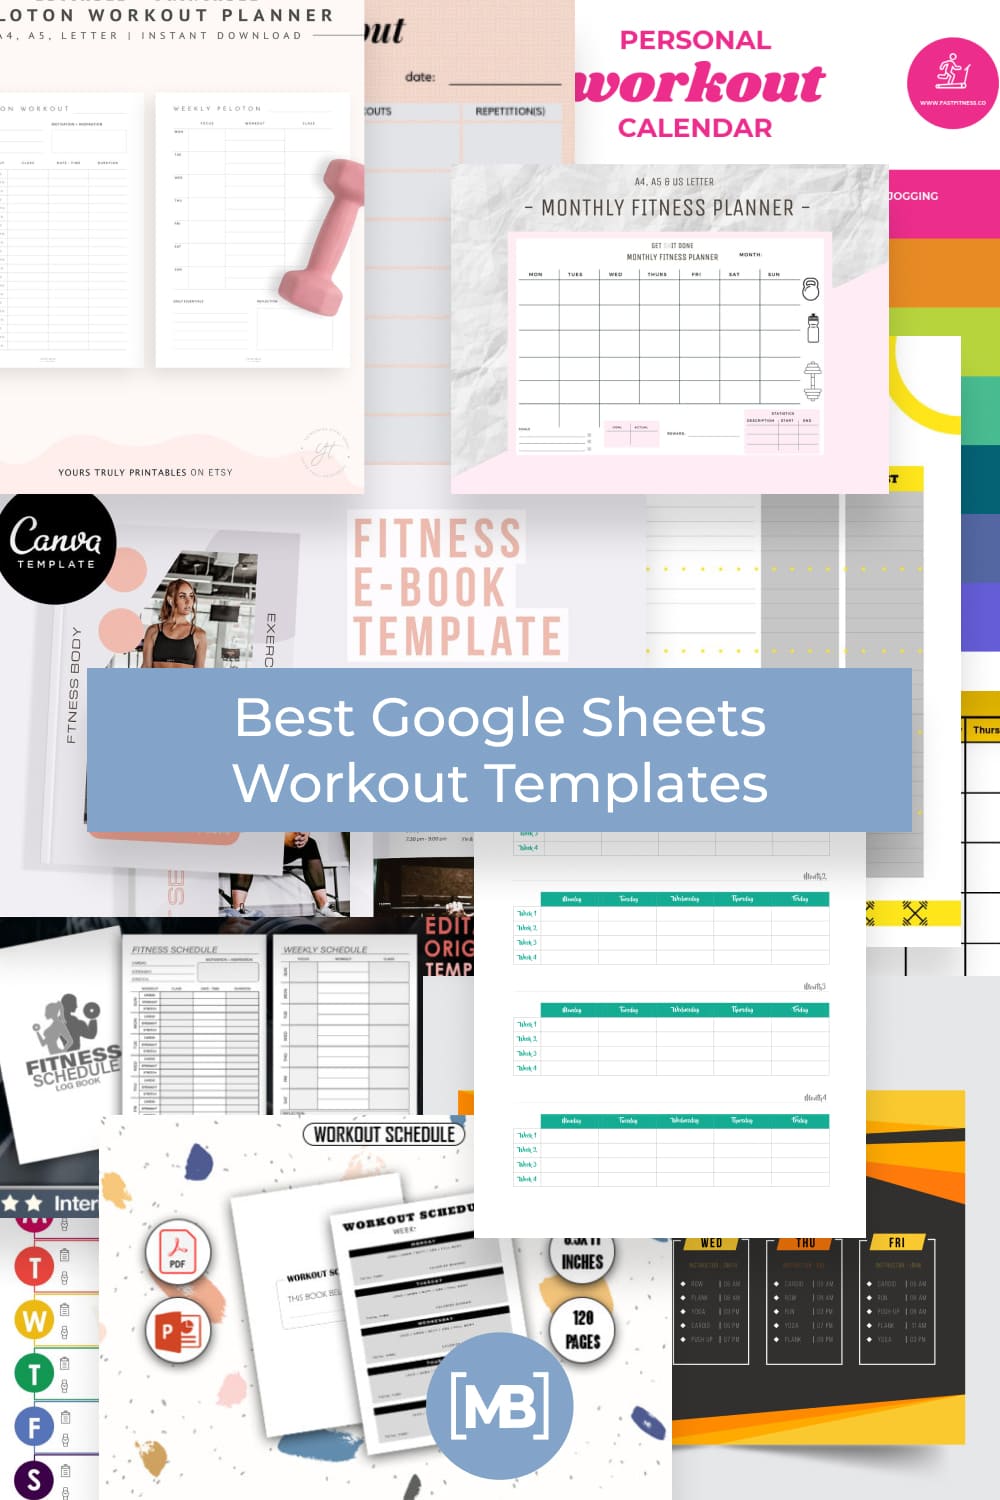 Best Google Sheets Workout Templates Pinterest.